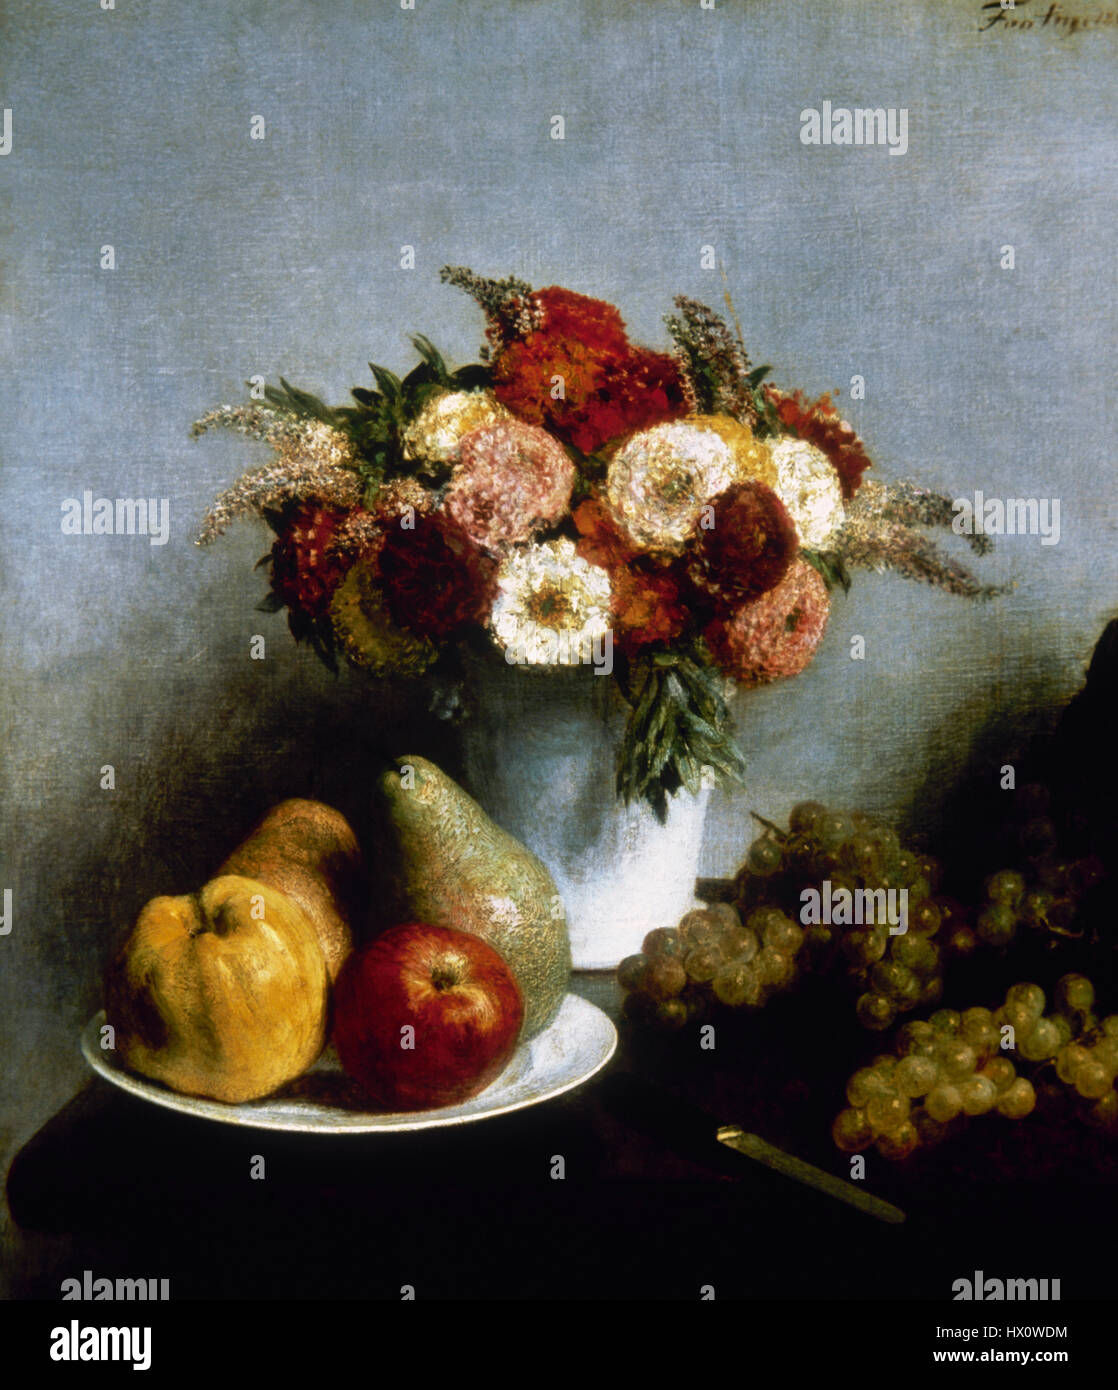 Henri Fantin-Latour (1836-1904). El pintor francés. Flores y Frutas, 1865. Óleo sobre lienzo. Museo de Orsay. París. Francia. Foto de stock